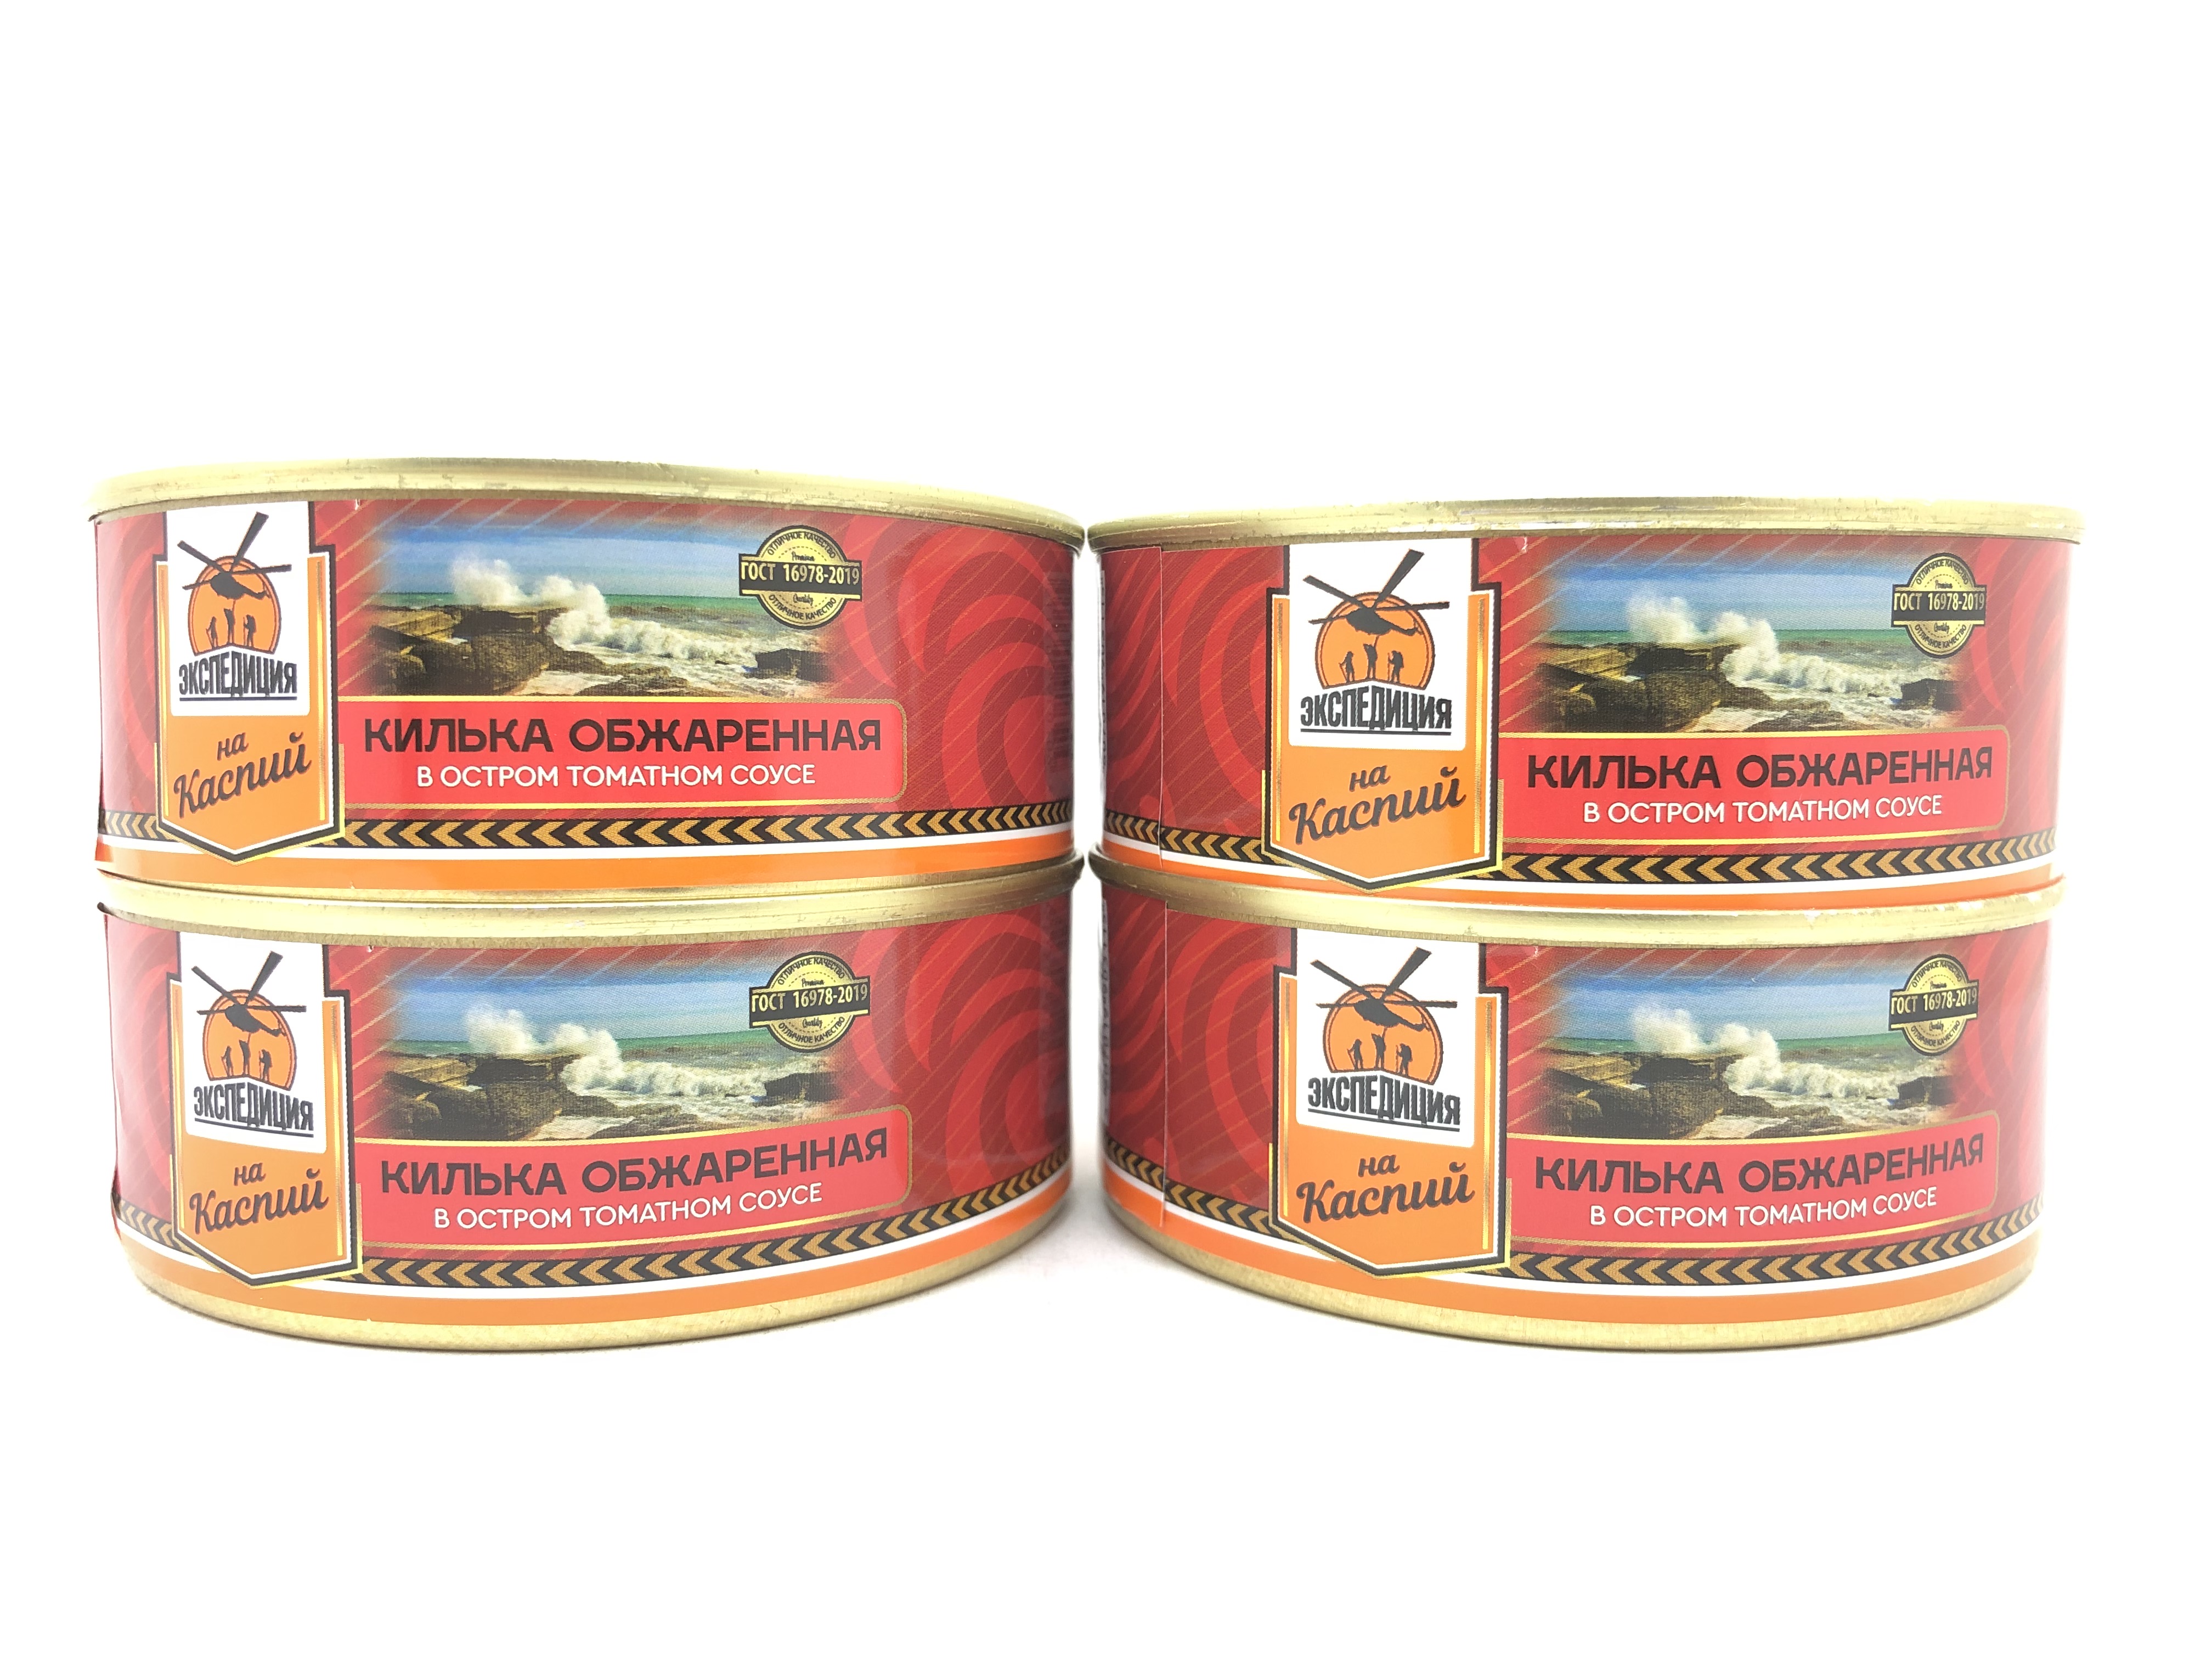 Килька каспийская Экспедиция обжаренная в остром томатном соусе, 4 шт по 240 г